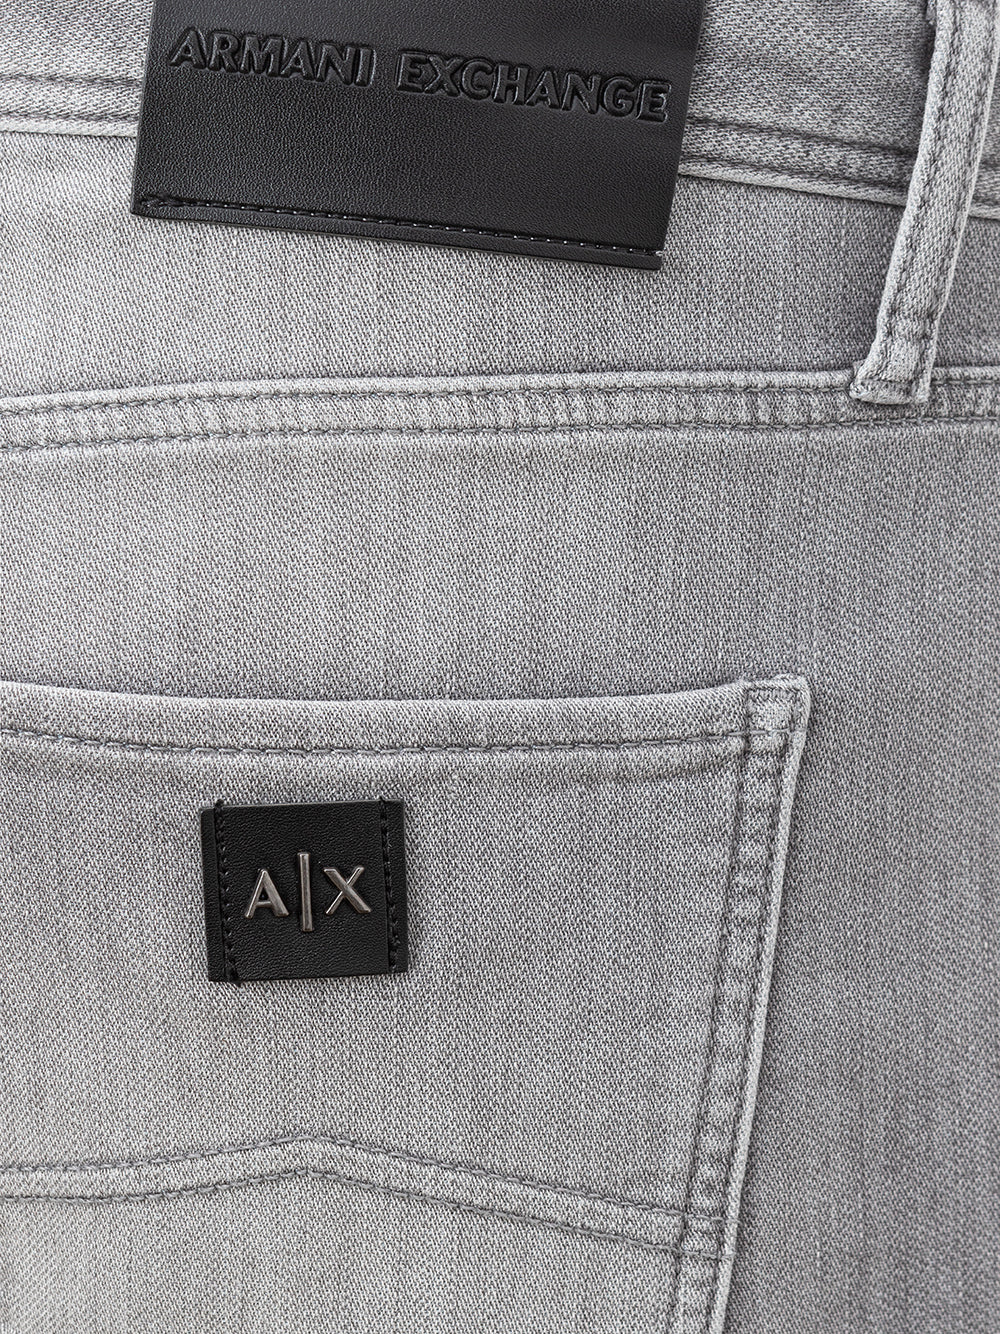 Armani Exchange five pocket gray jeans